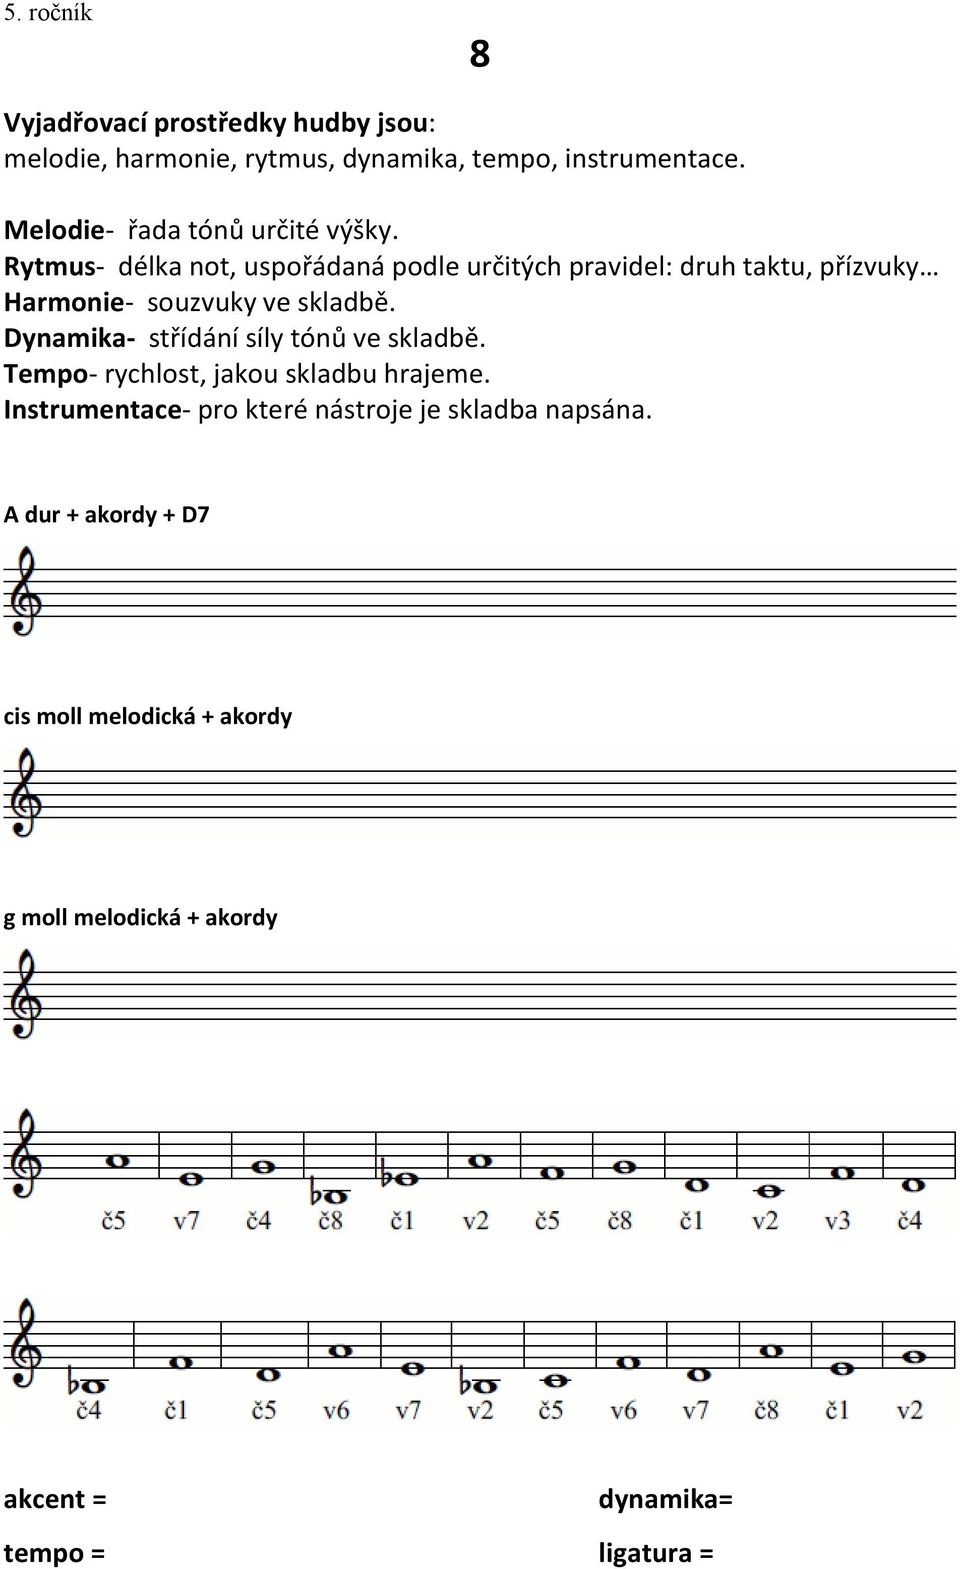 Rytmus- délka not, uspořádaná podle určitých pravidel: druh taktu, přízvuky Harmonie- souzvuky ve skladbě.